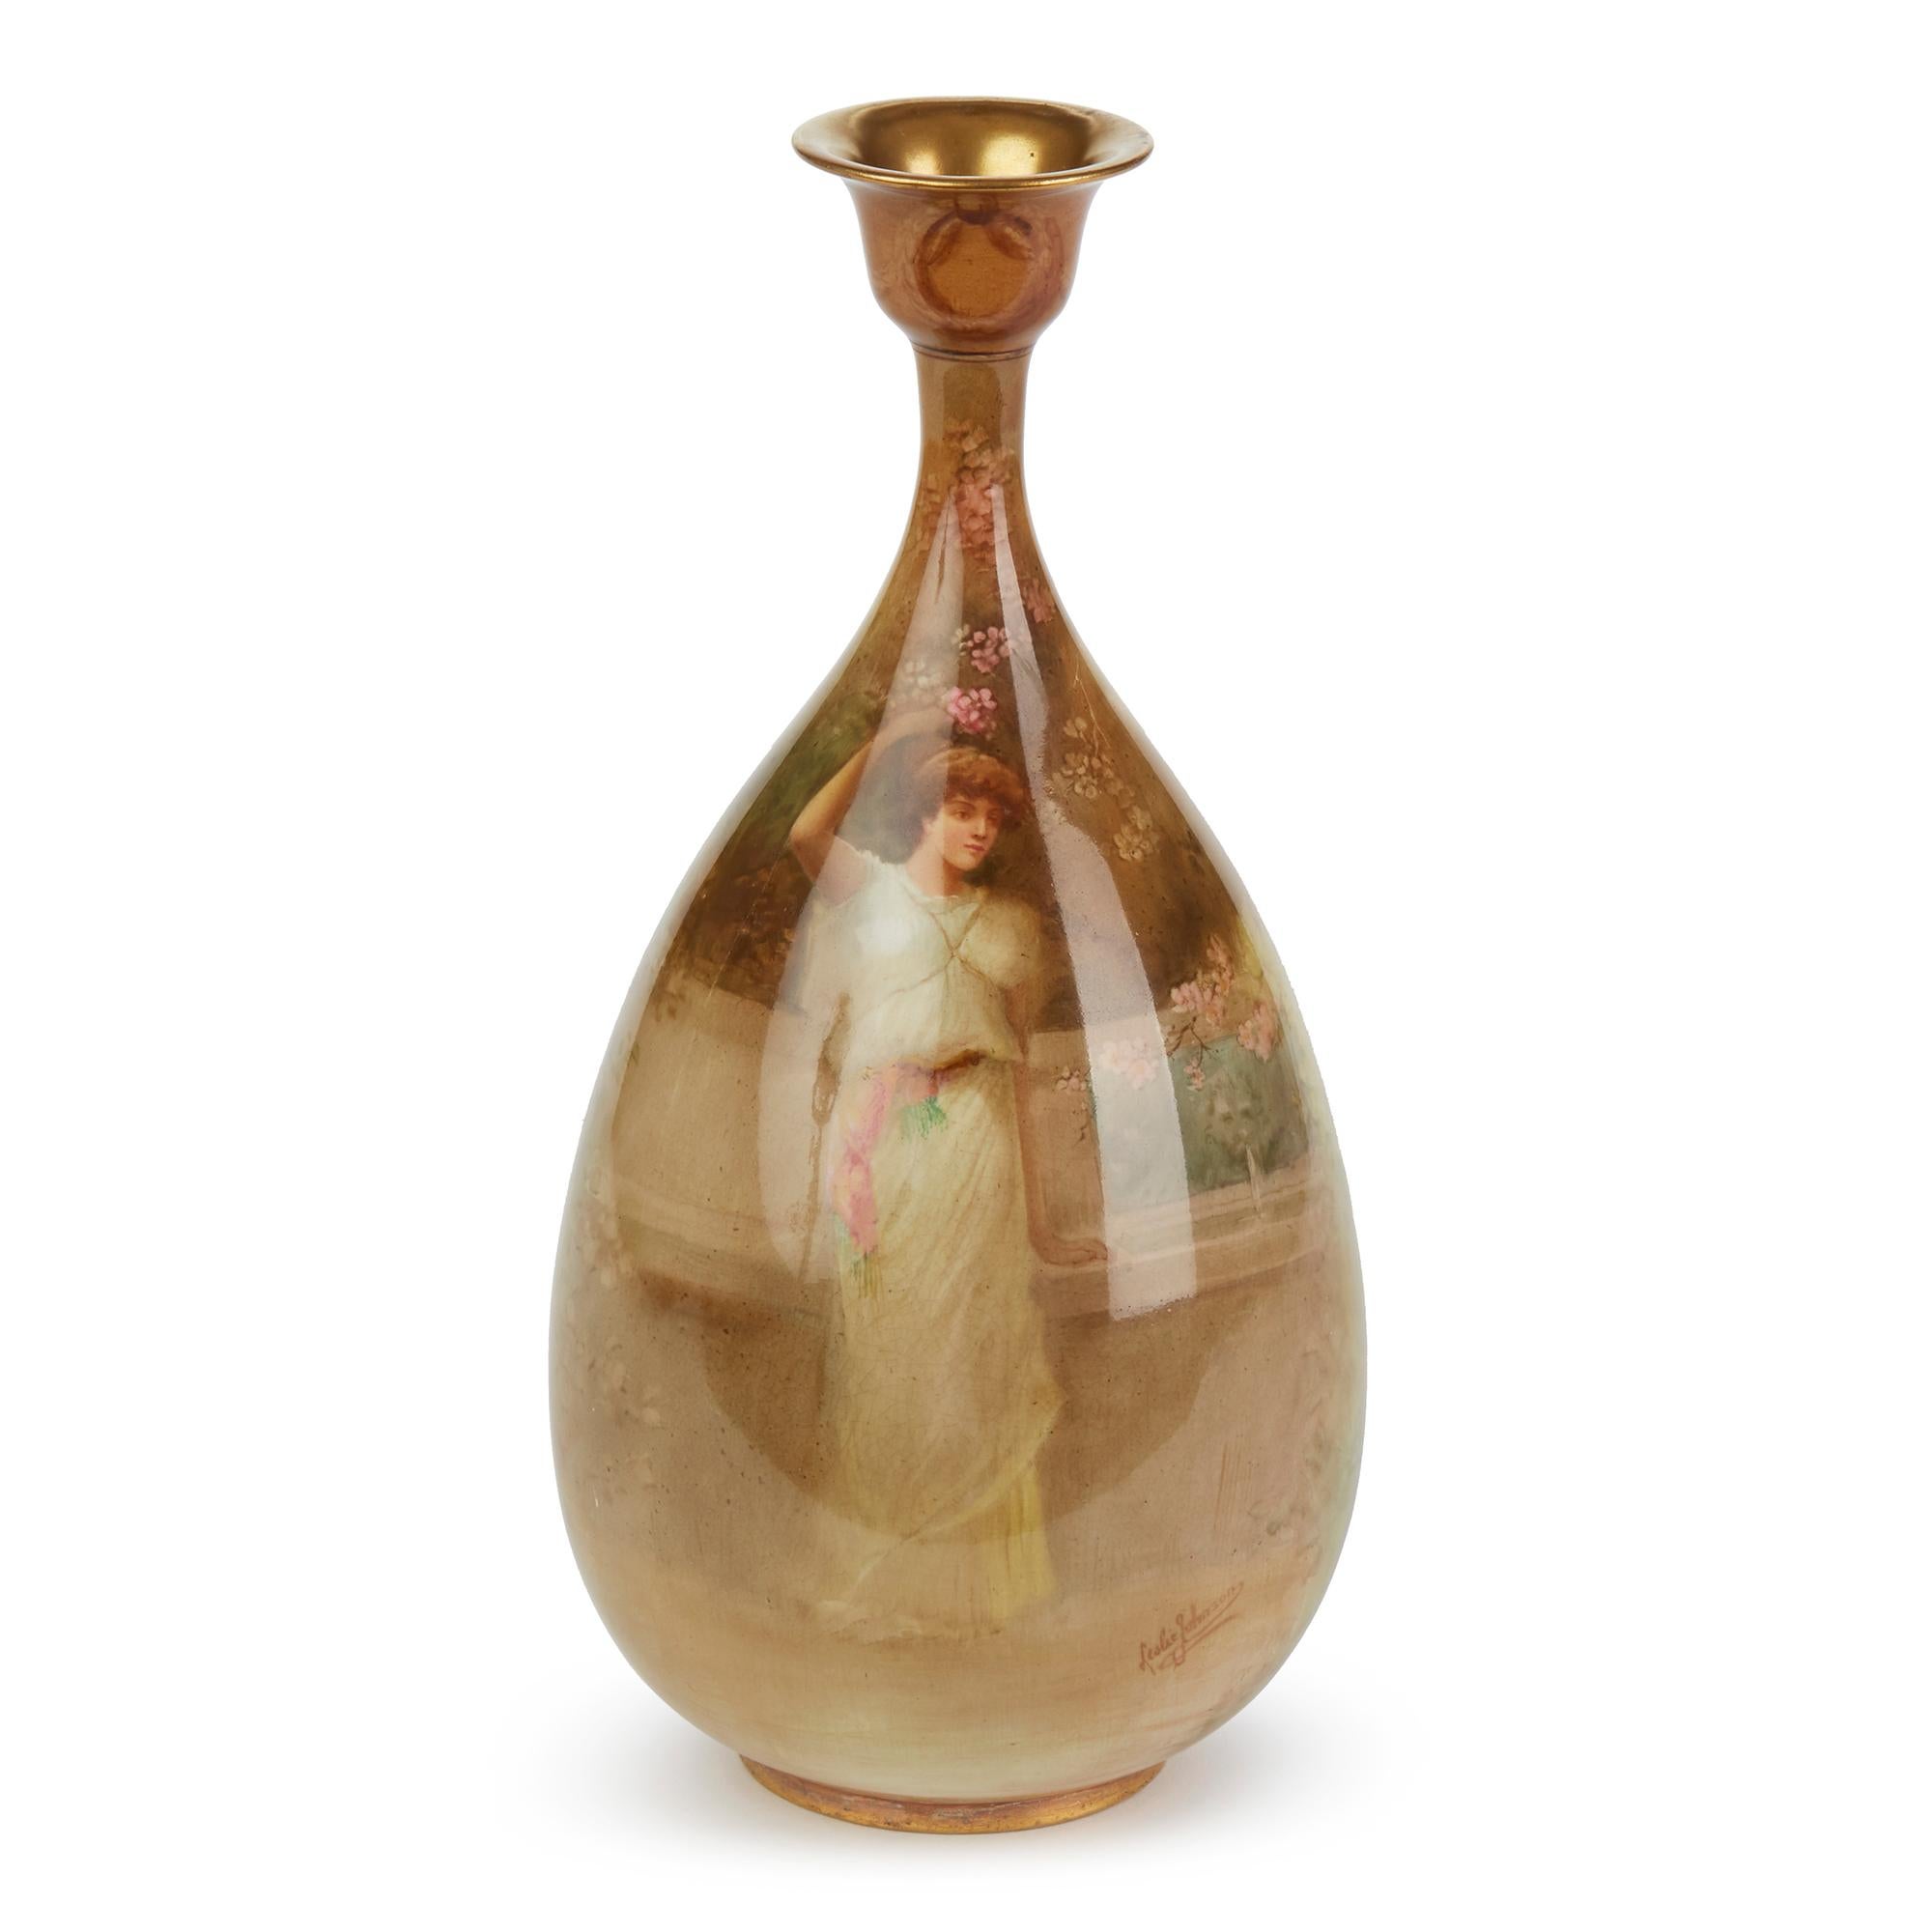 Un exceptionnel et rare vase en forme de goutte d'eau en céramique luscienne de Doulton Burslem, peint à la main par le célèbre artiste de miniatures et d'histoire Leslie Johnson, datant de 1891 à 1902. Ce grand vase de forme élégante présente un